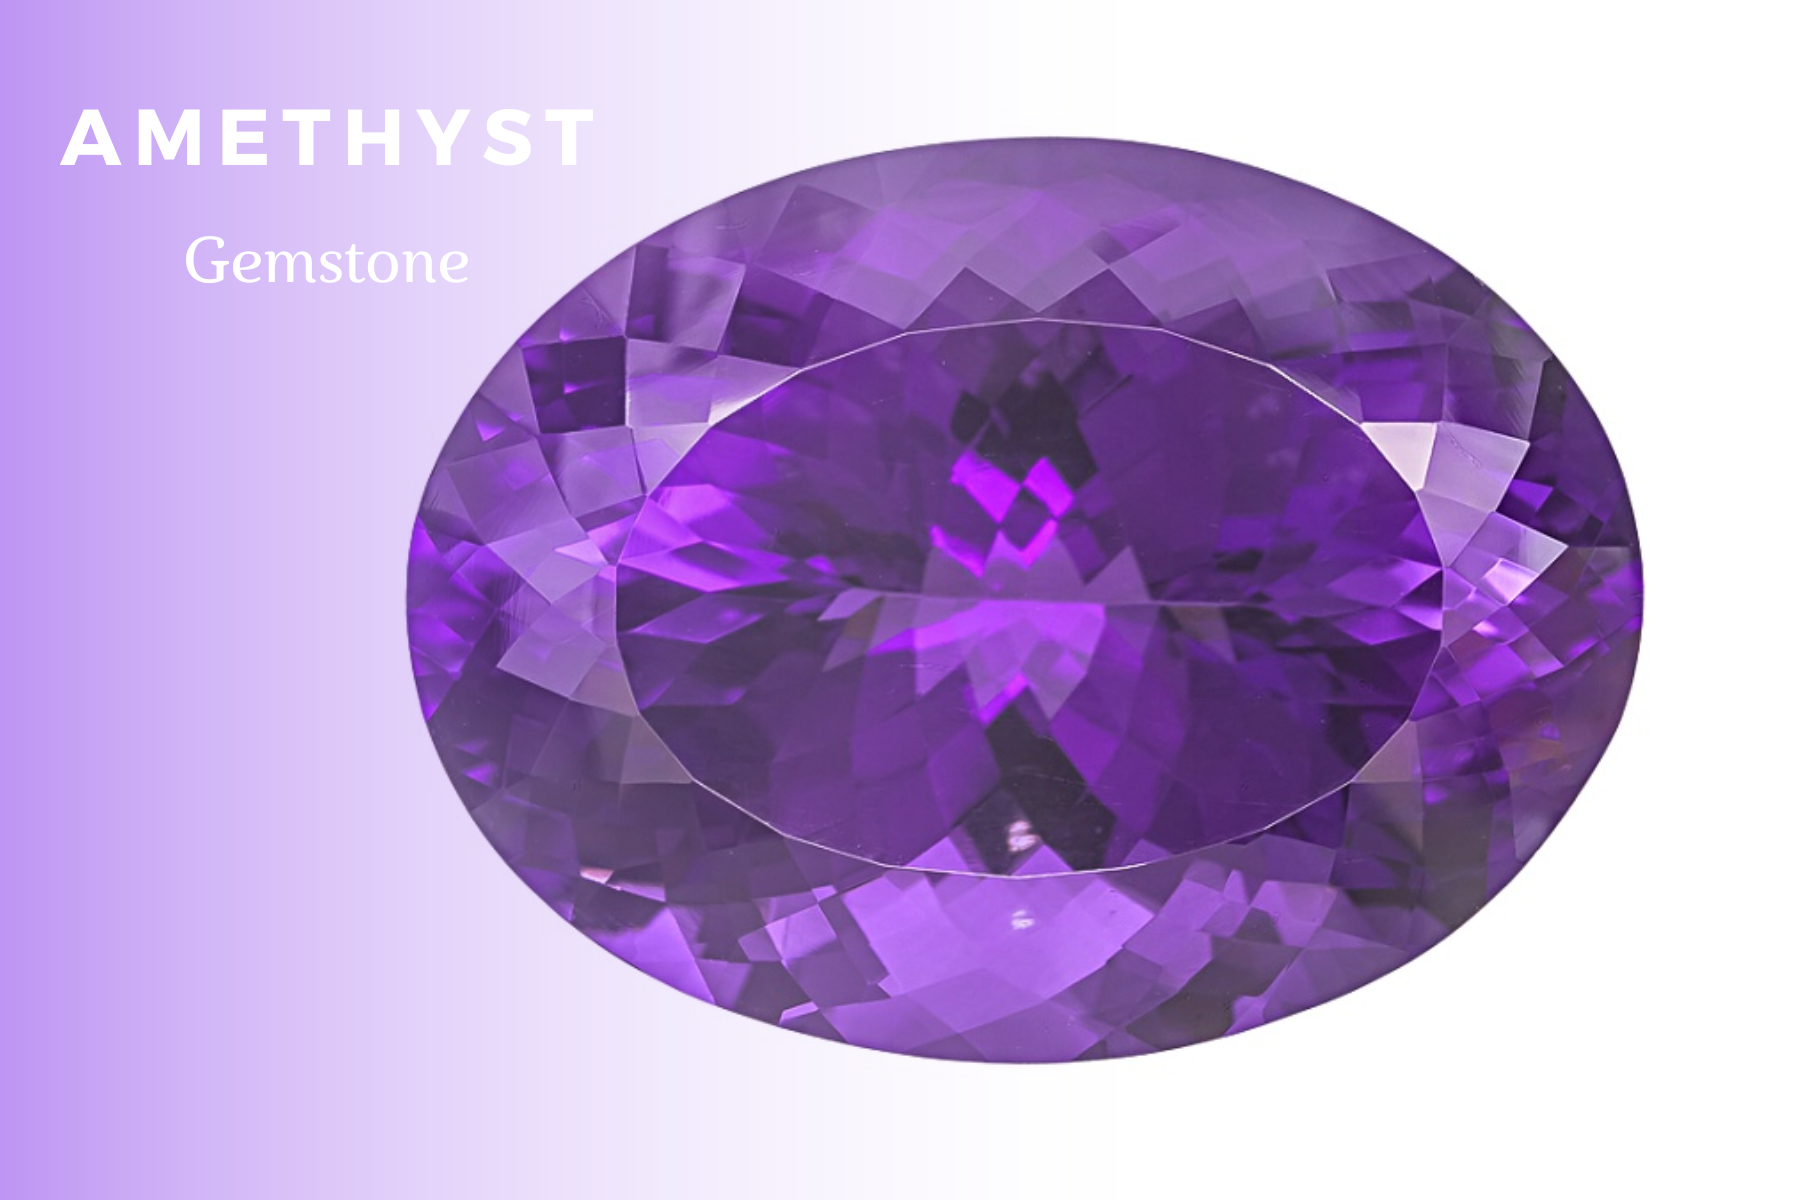 Oblong purple amethyst stone